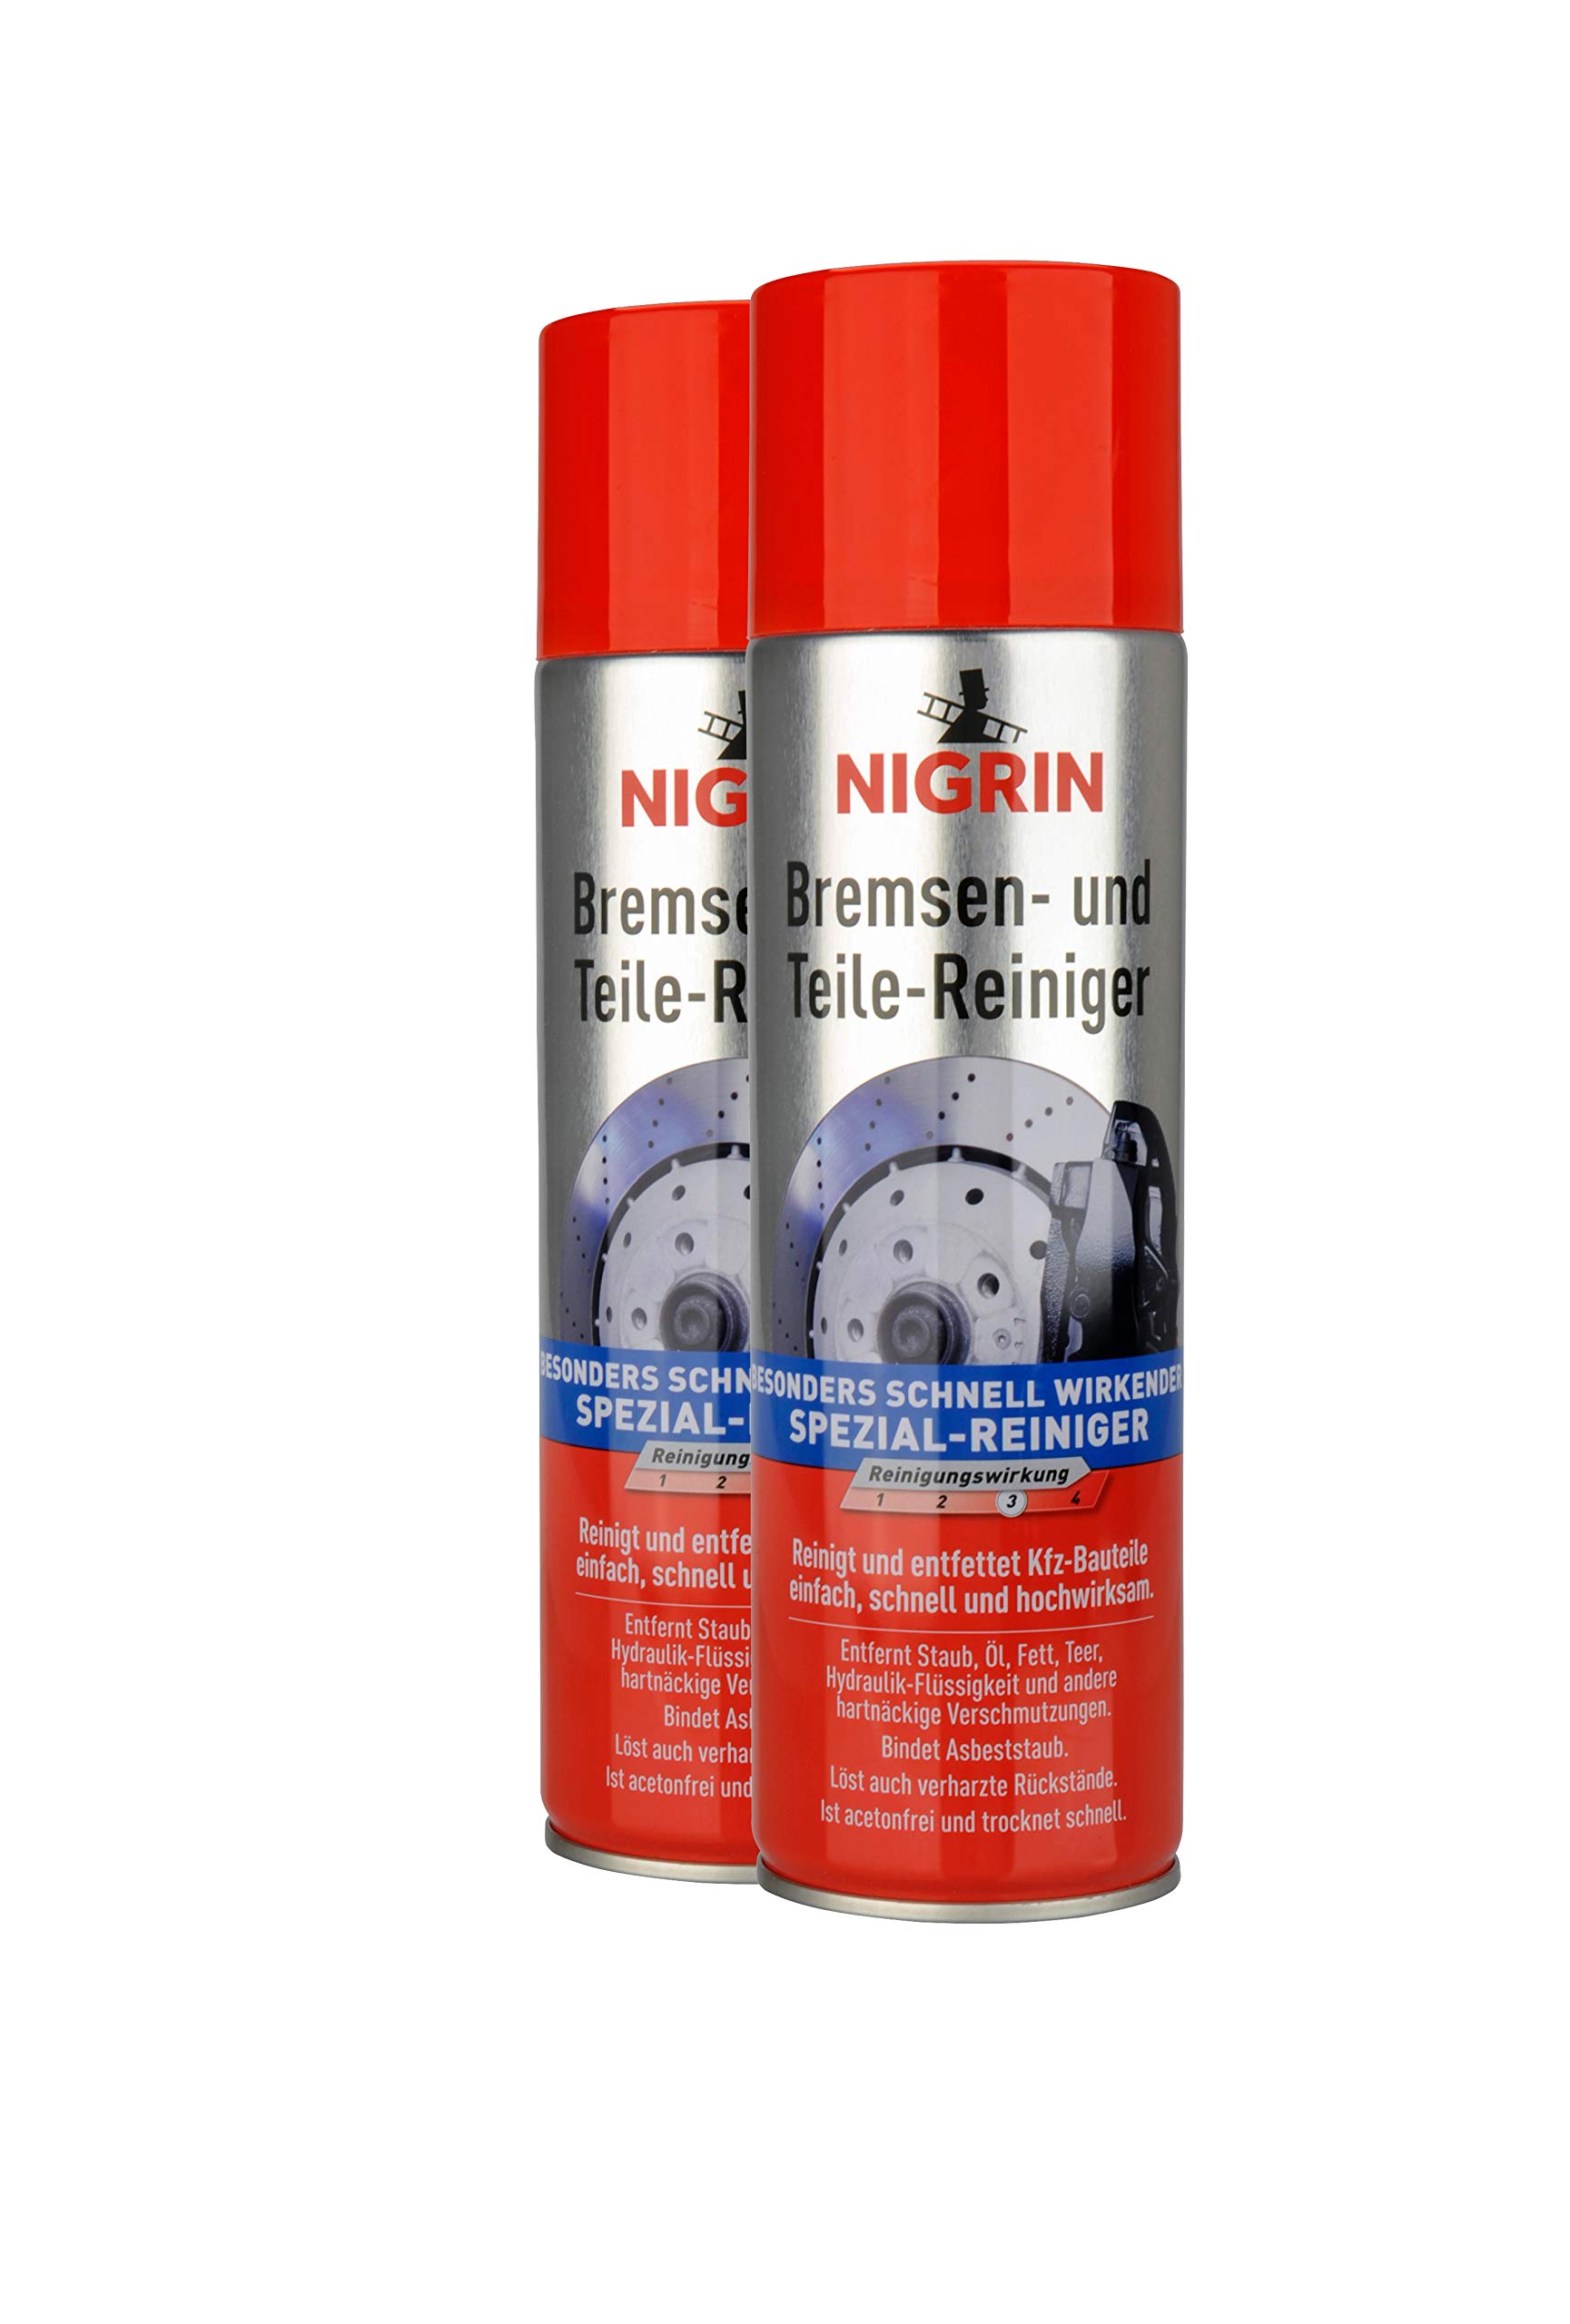 NIGRIN Bremsenreiniger, Motor-Teilereiniger, zur Entfettung von Bremsen-, Motor- und Maschinenteilen, 2er-Pack 500 ml Sprühdose von NIGRIN